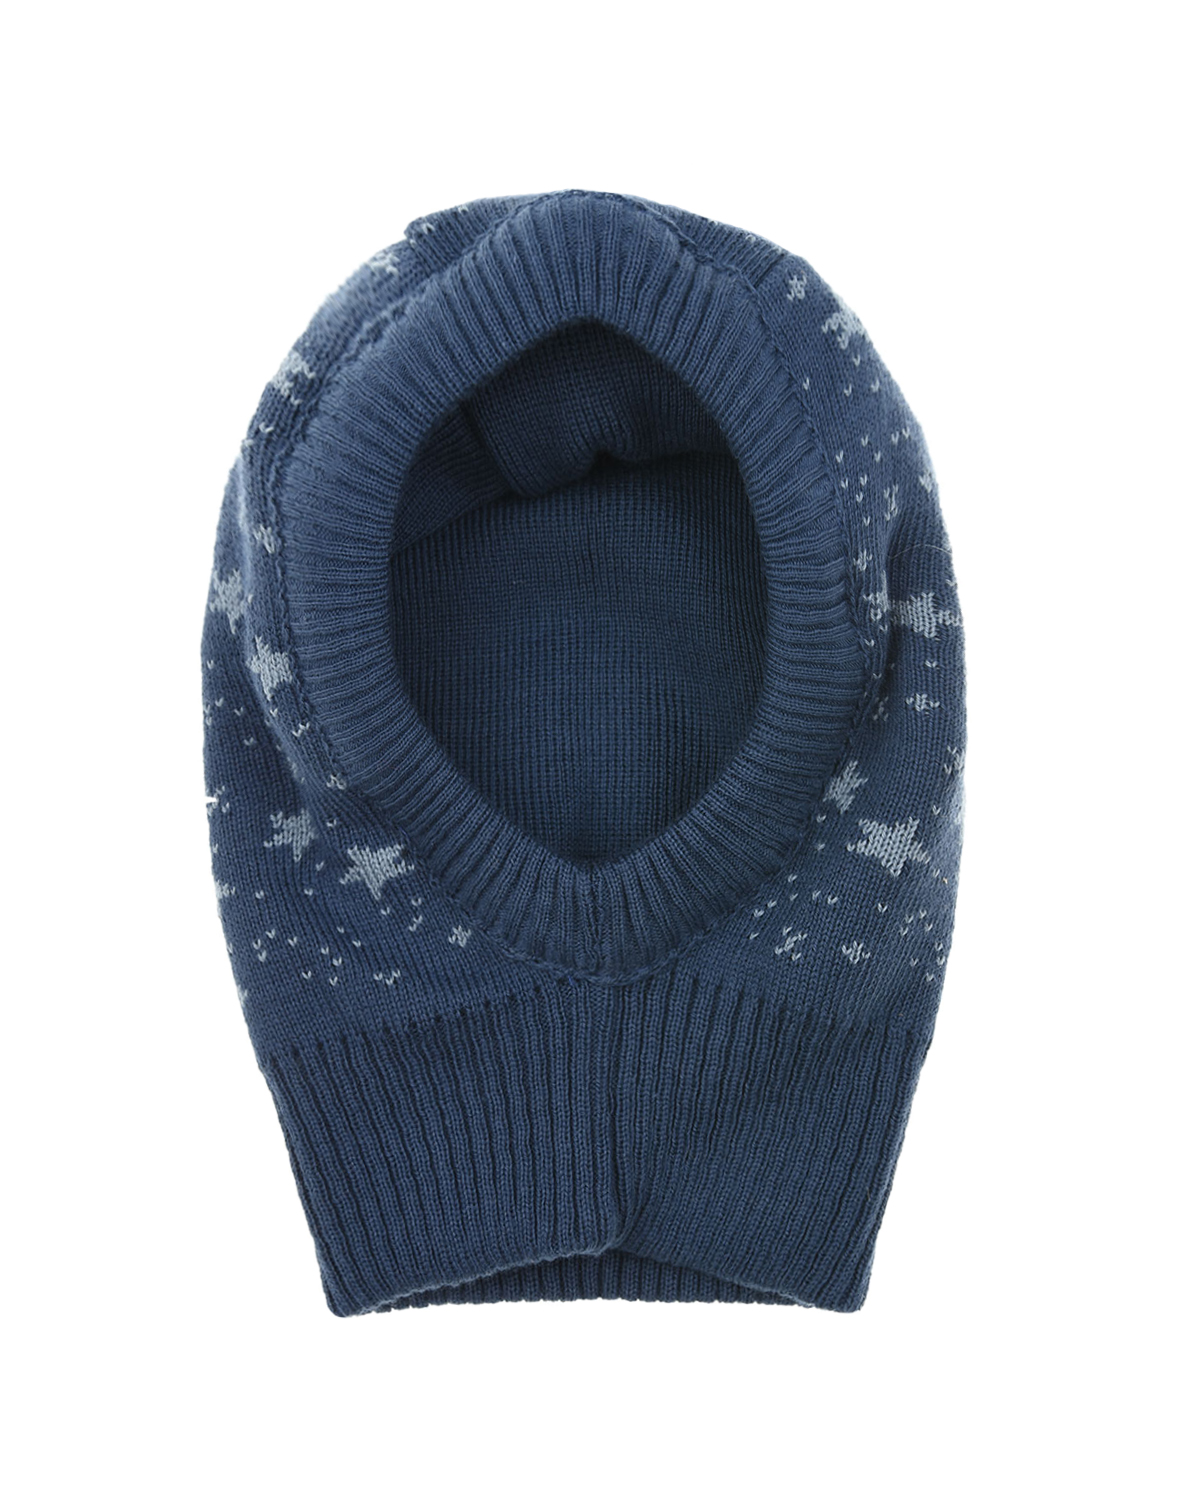 Голубая шапка-шлем с принтом "звездочки" MaxiMo детская, размер 45, цвет голубой - фото 2